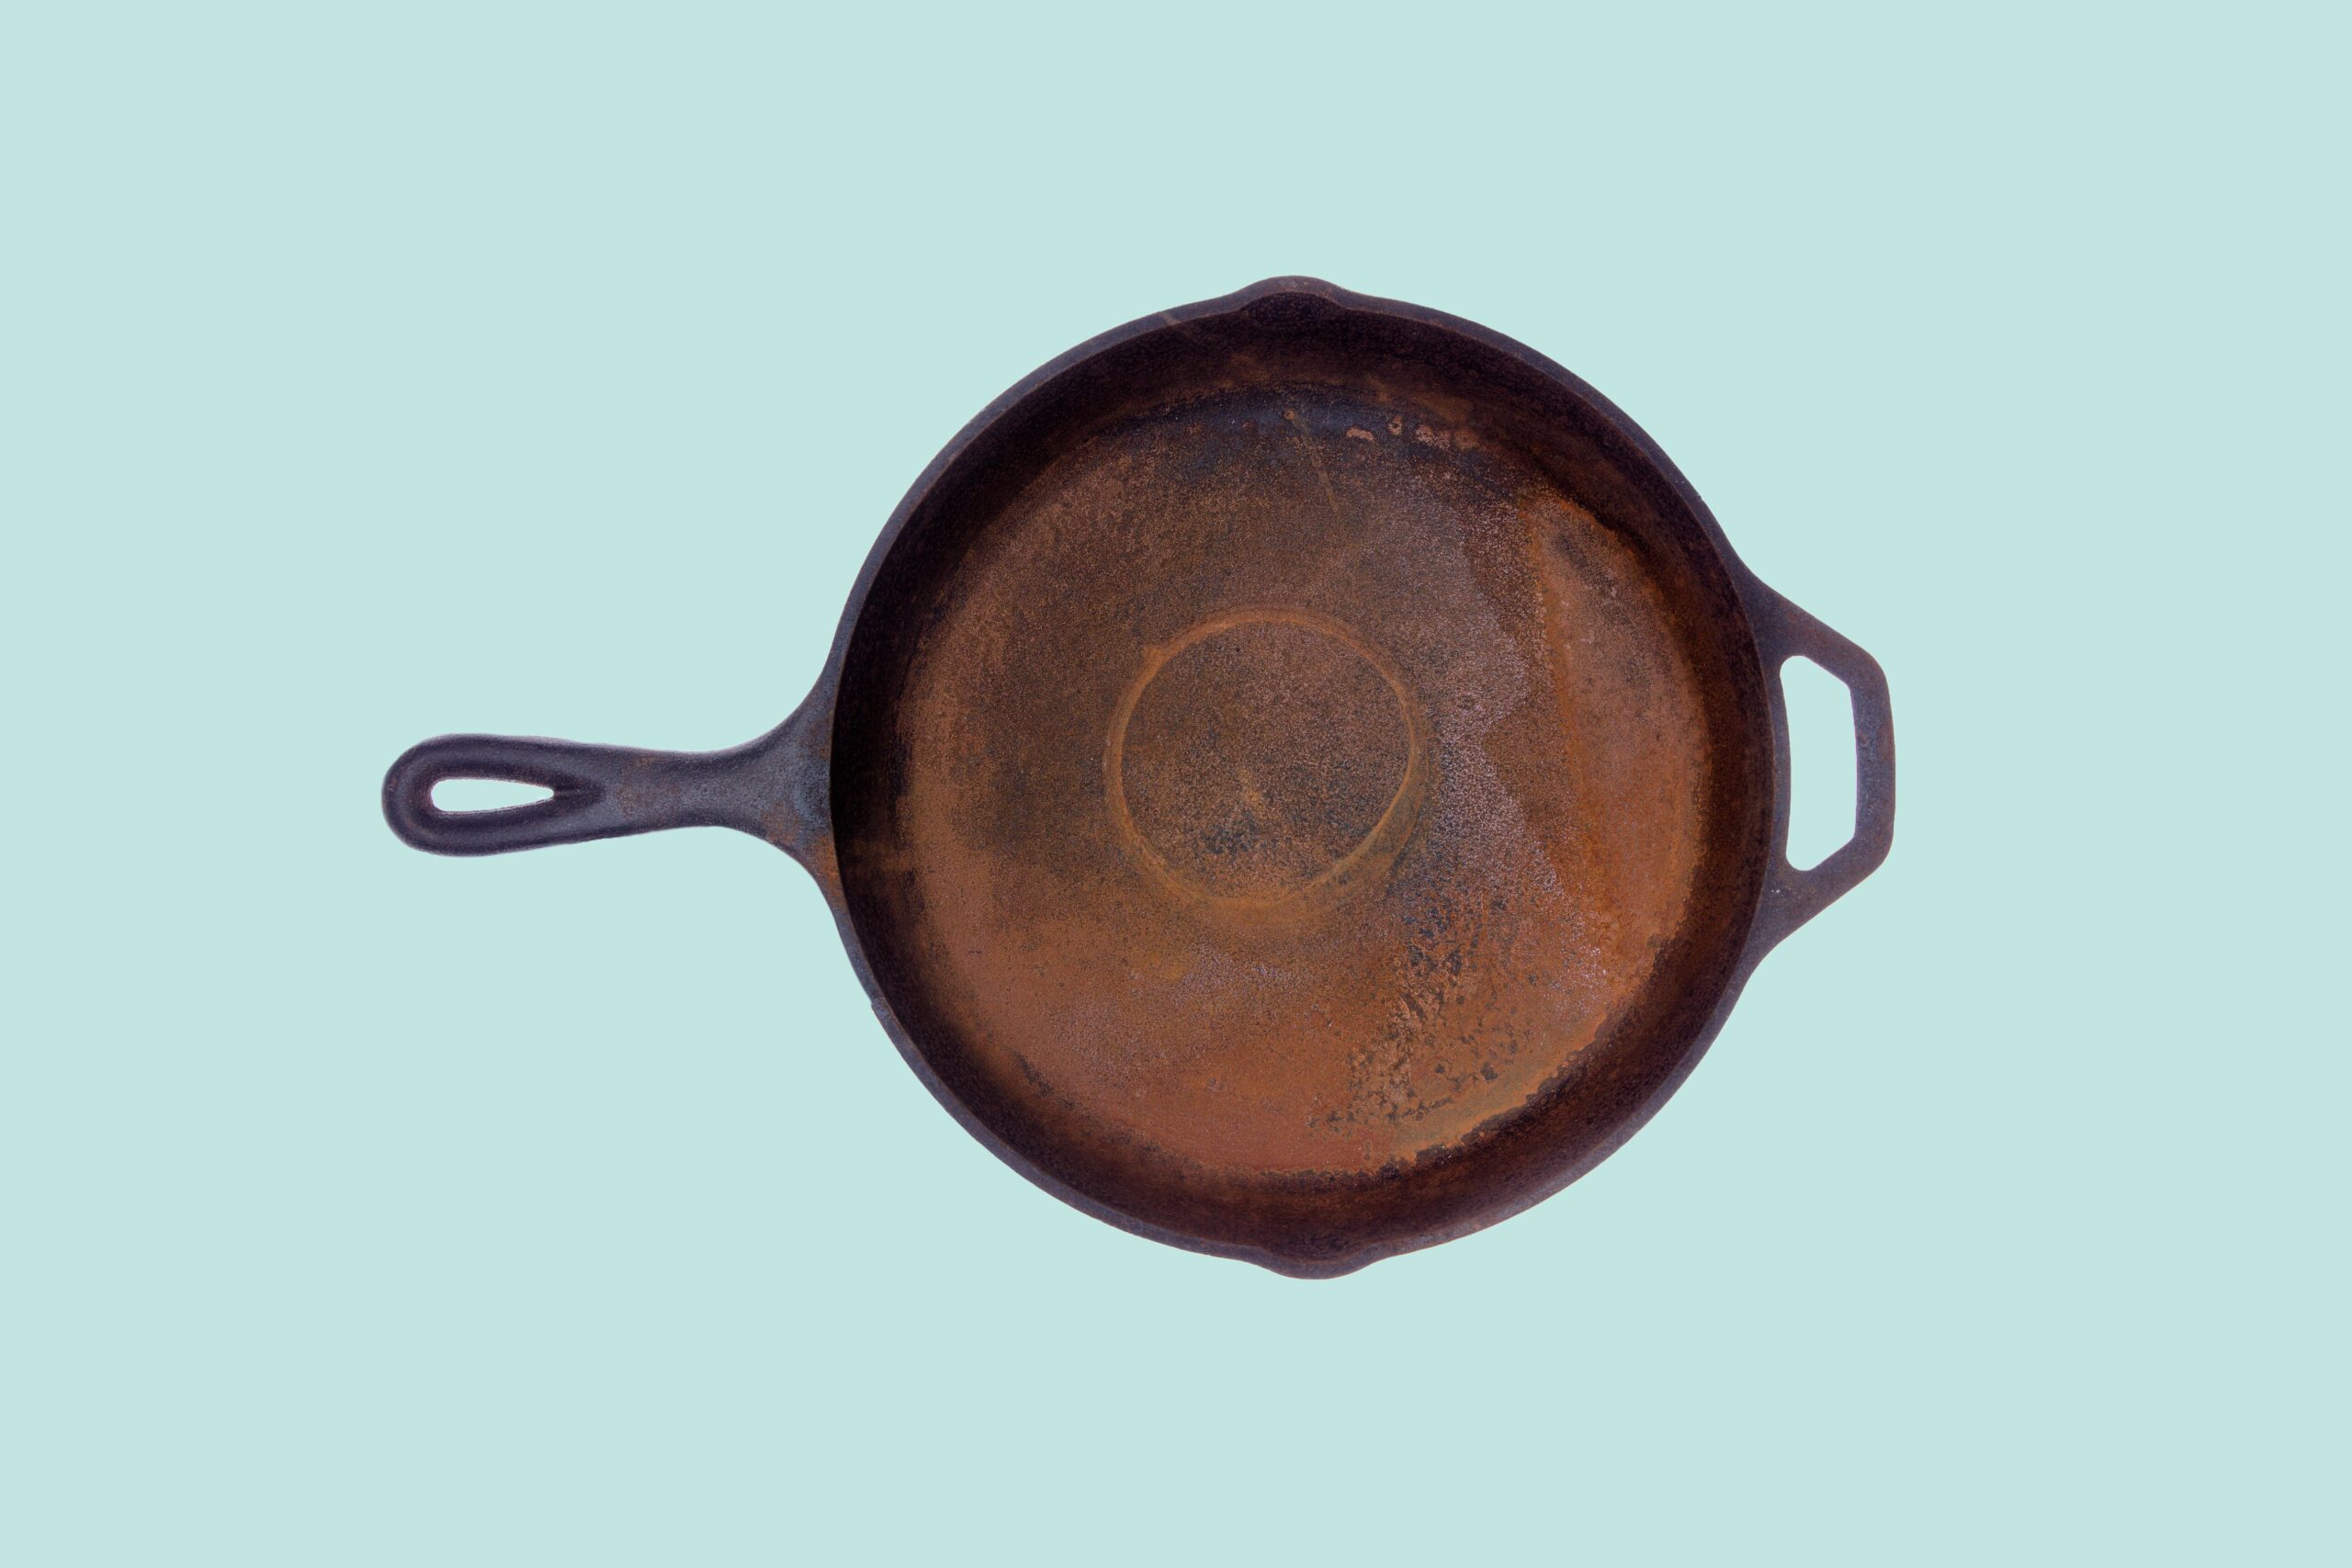 cast-iron-gone-rusty?-try-soaking-it-in-vinegar